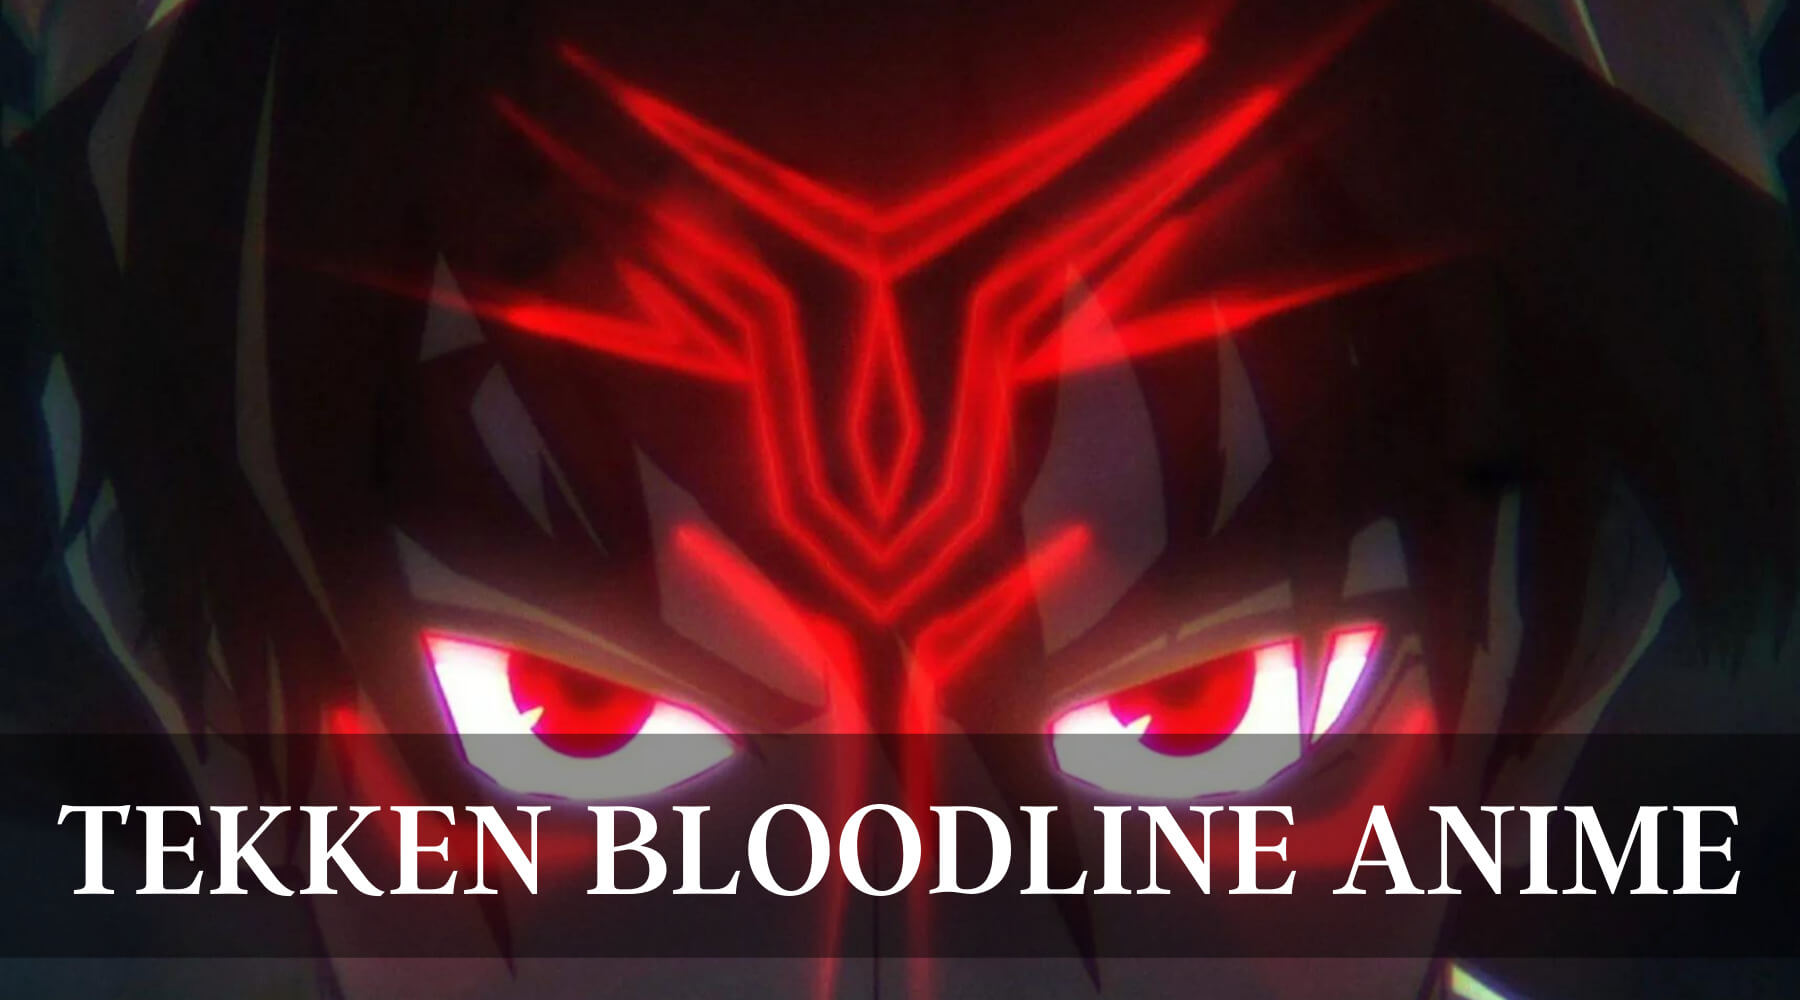 Tekken bloodline Anime release date